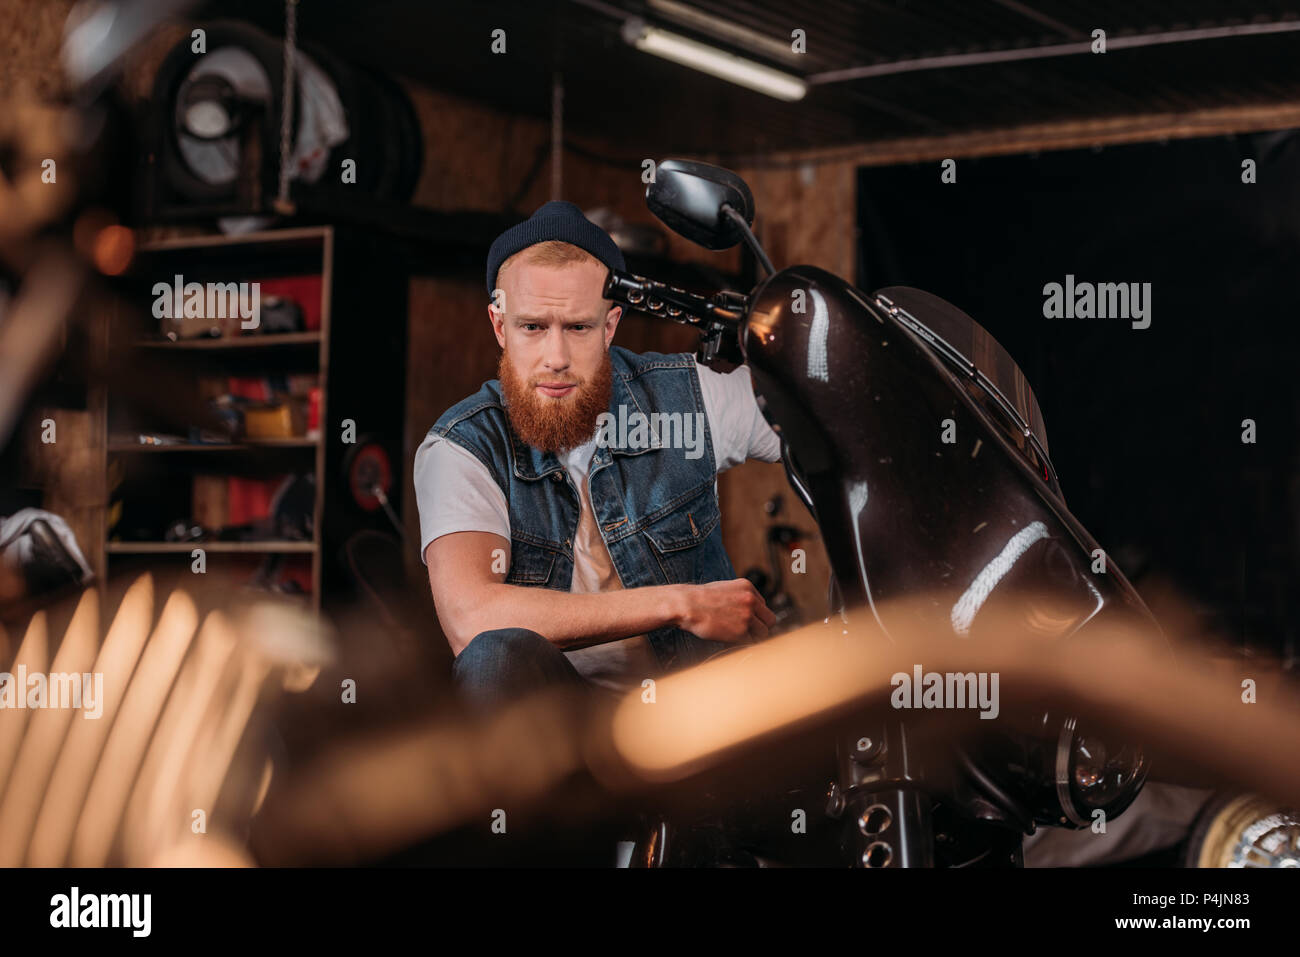 Portrait de beau jeune homme sur le vélo au garage Banque D'Images